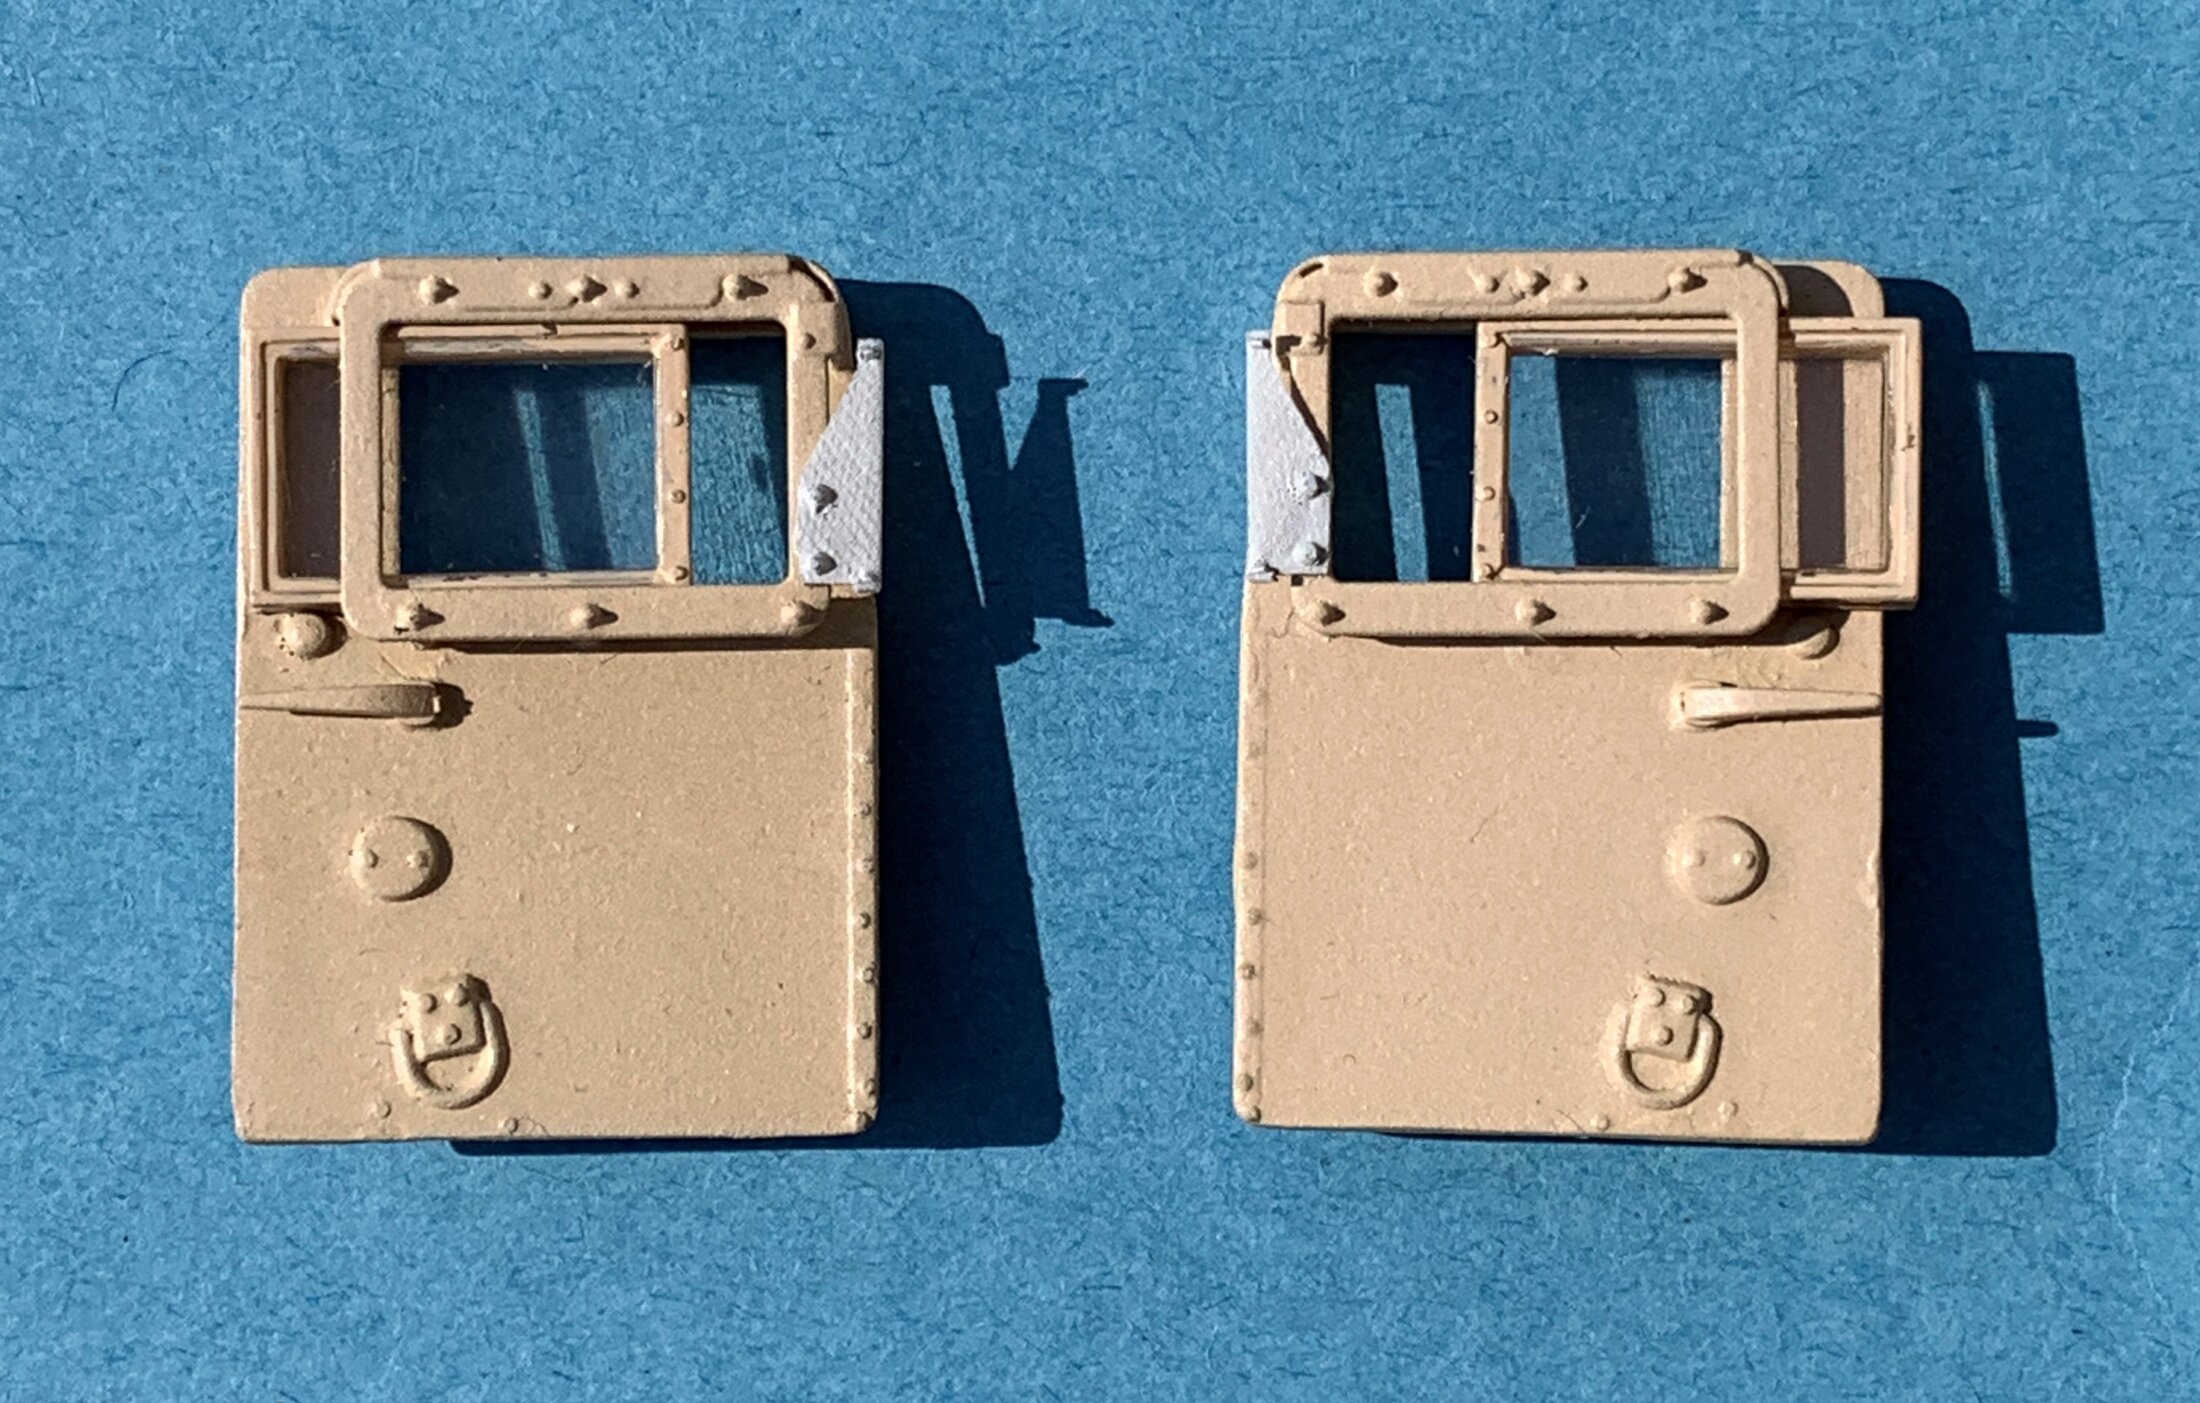 M1165 Army GMV - doors